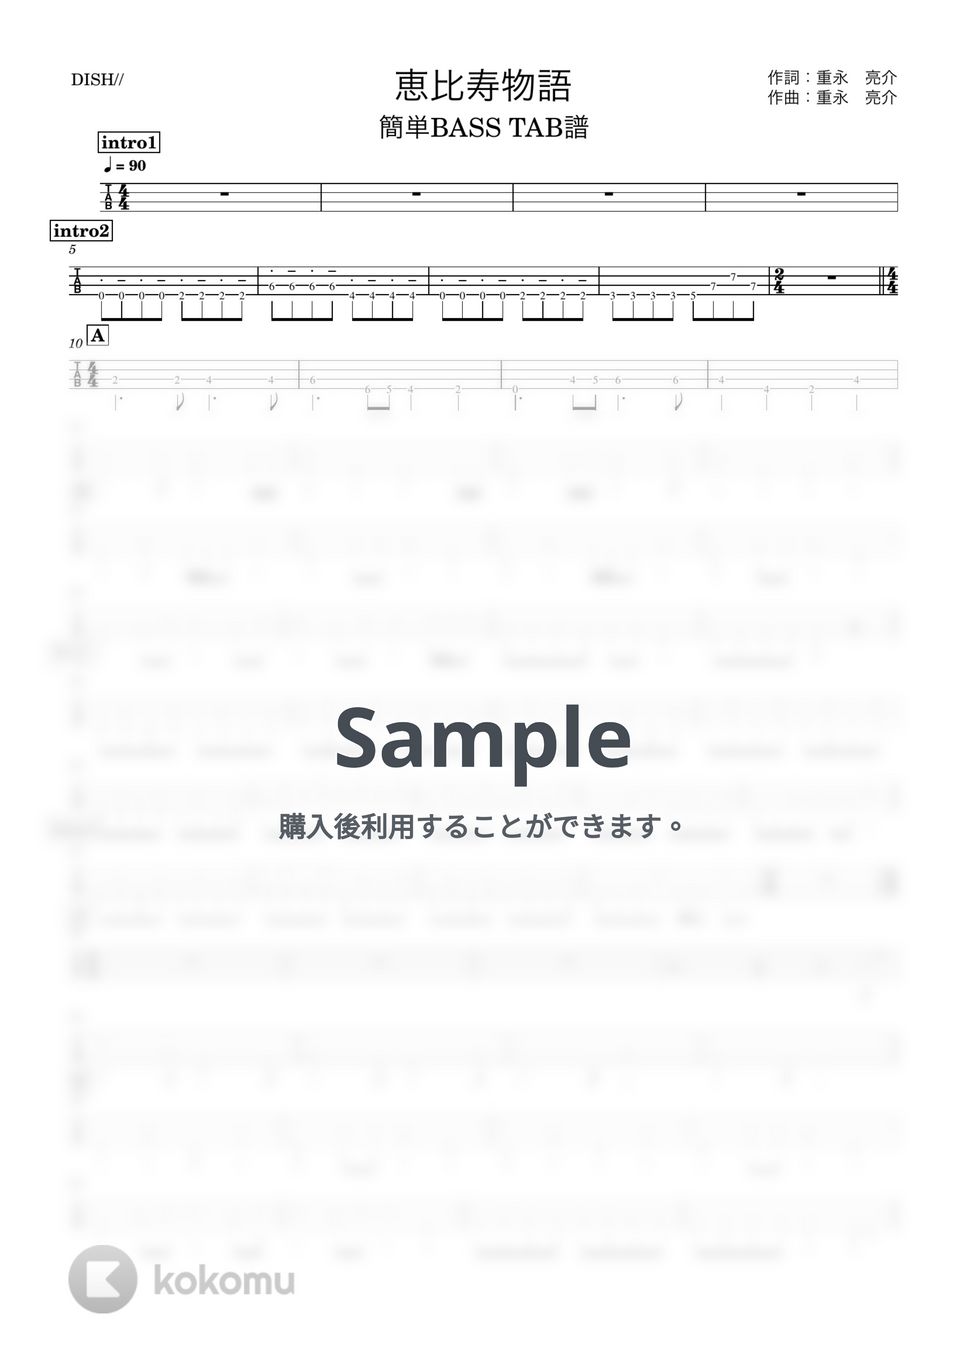 DISH// - 恵比寿物語 (『簡単アレンジベースTAB譜』4弦ベース対応) by 箱譜屋